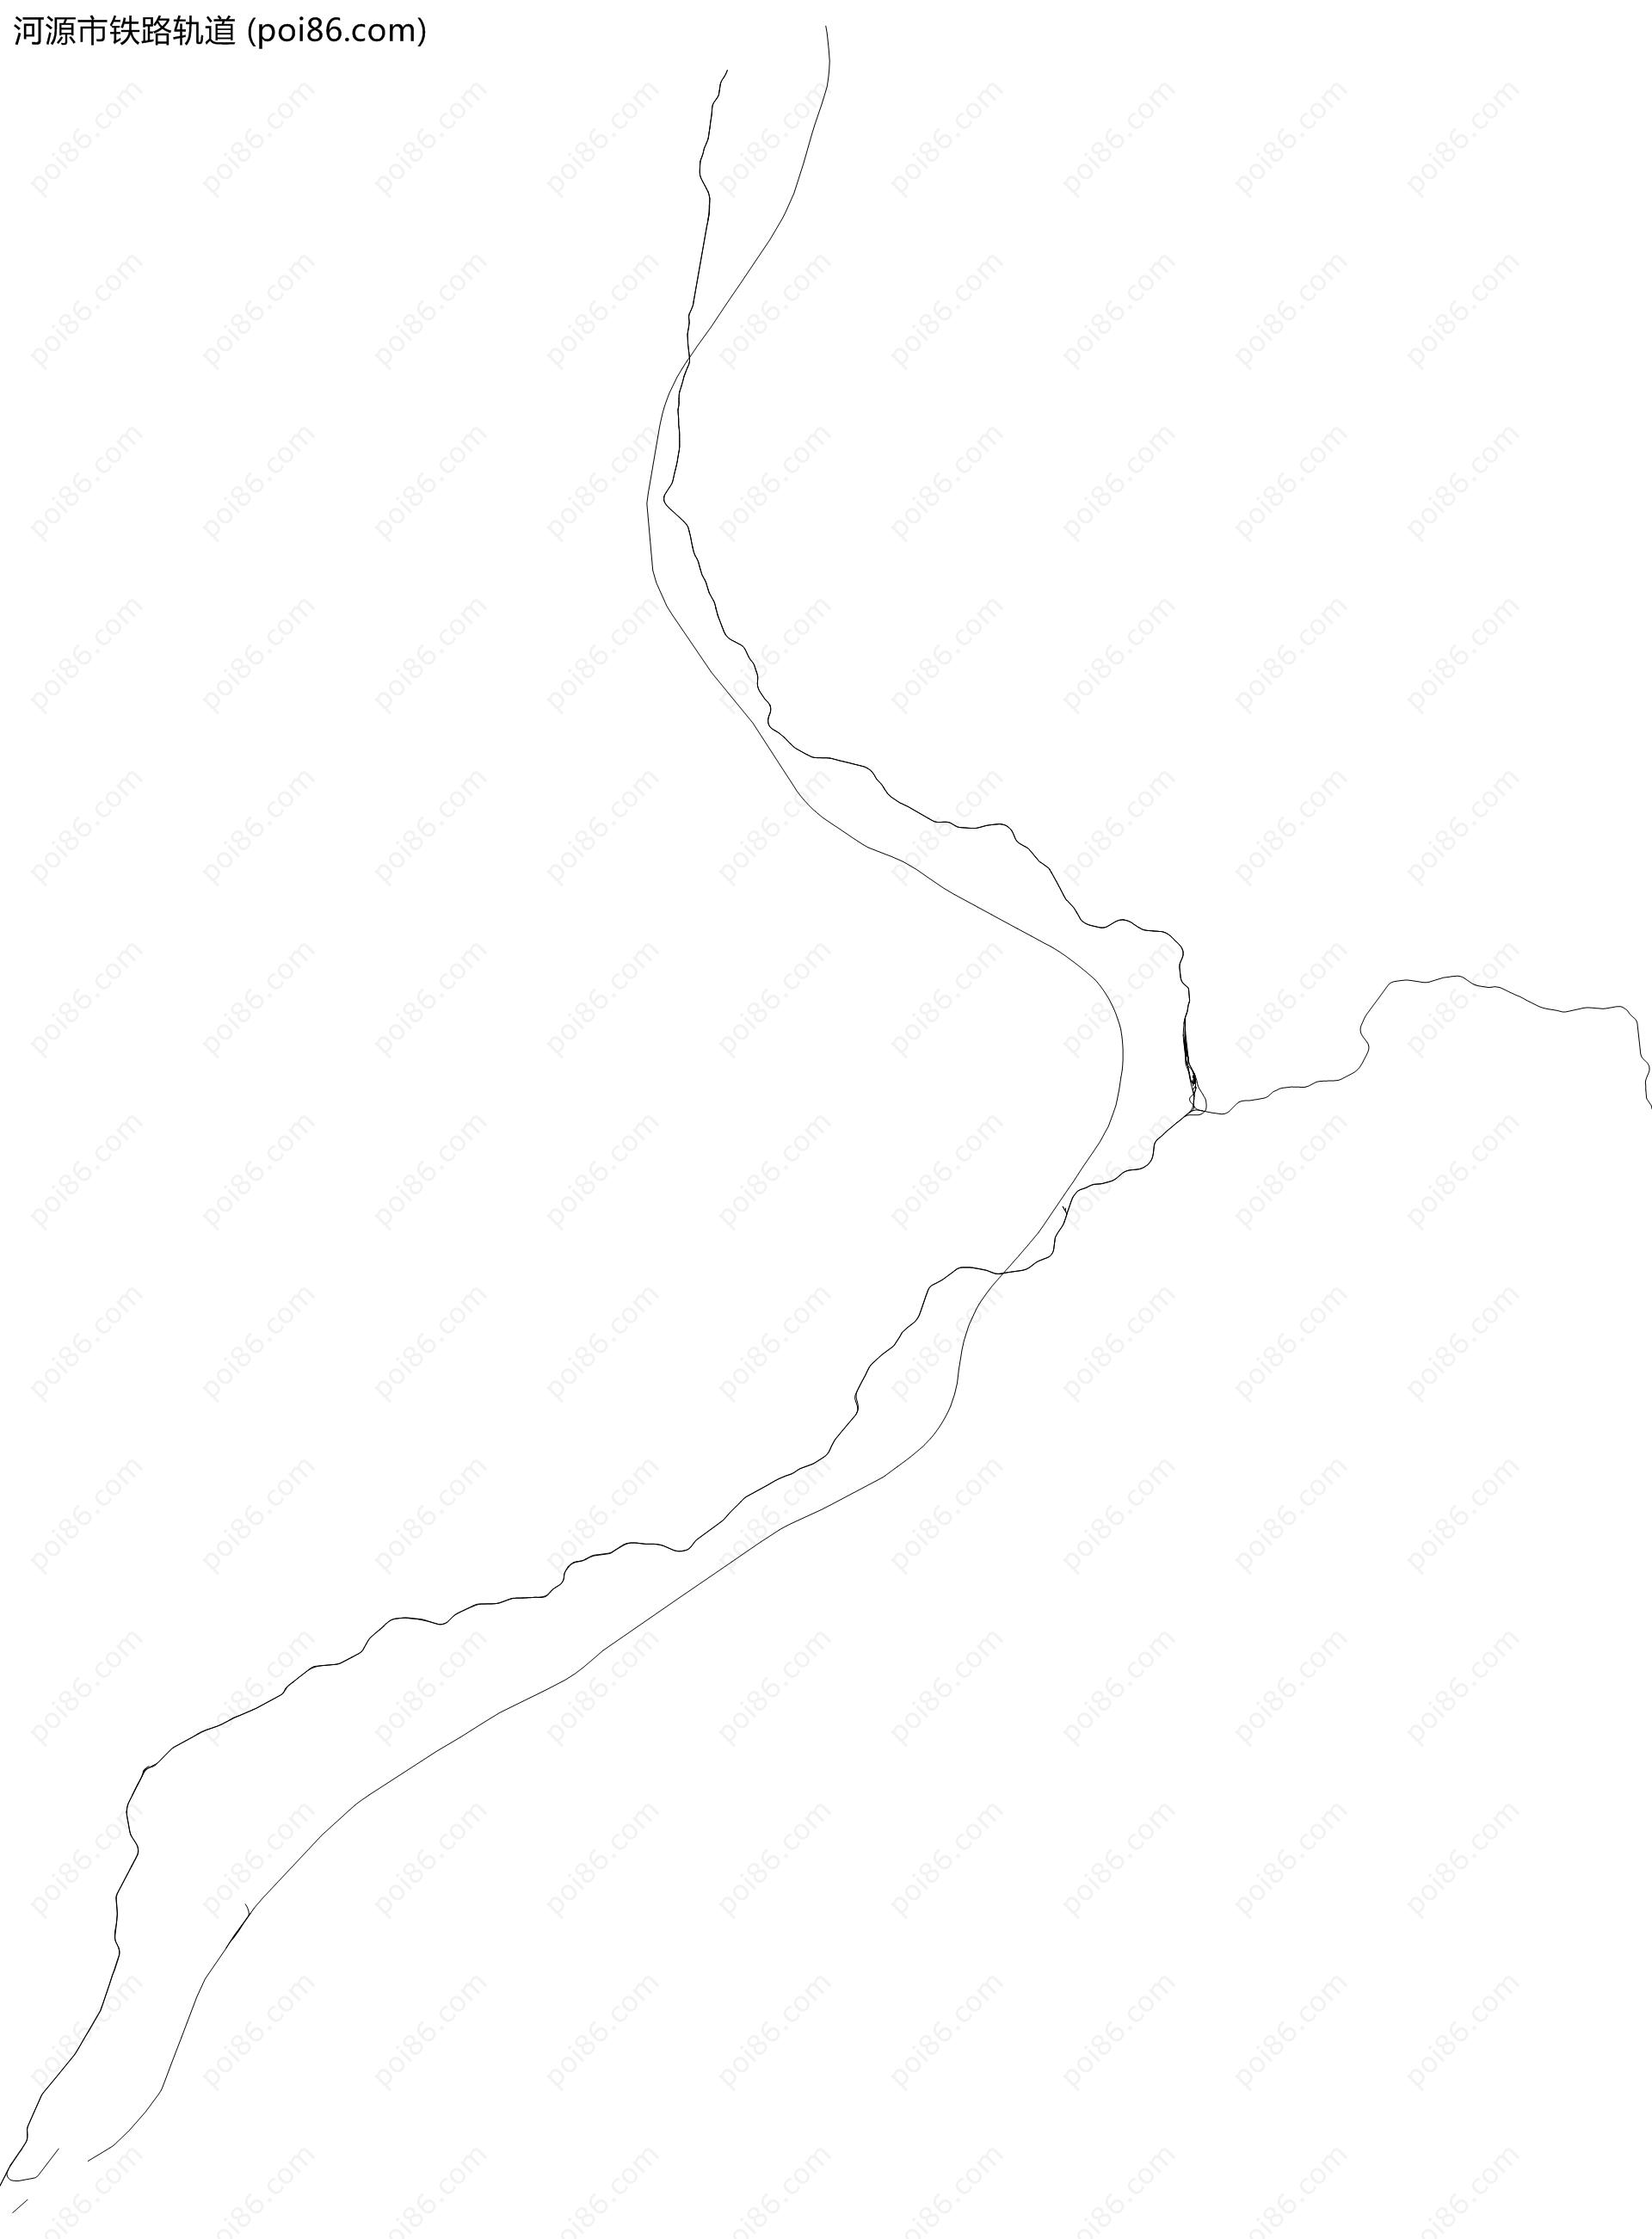 河源市铁路轨道地图